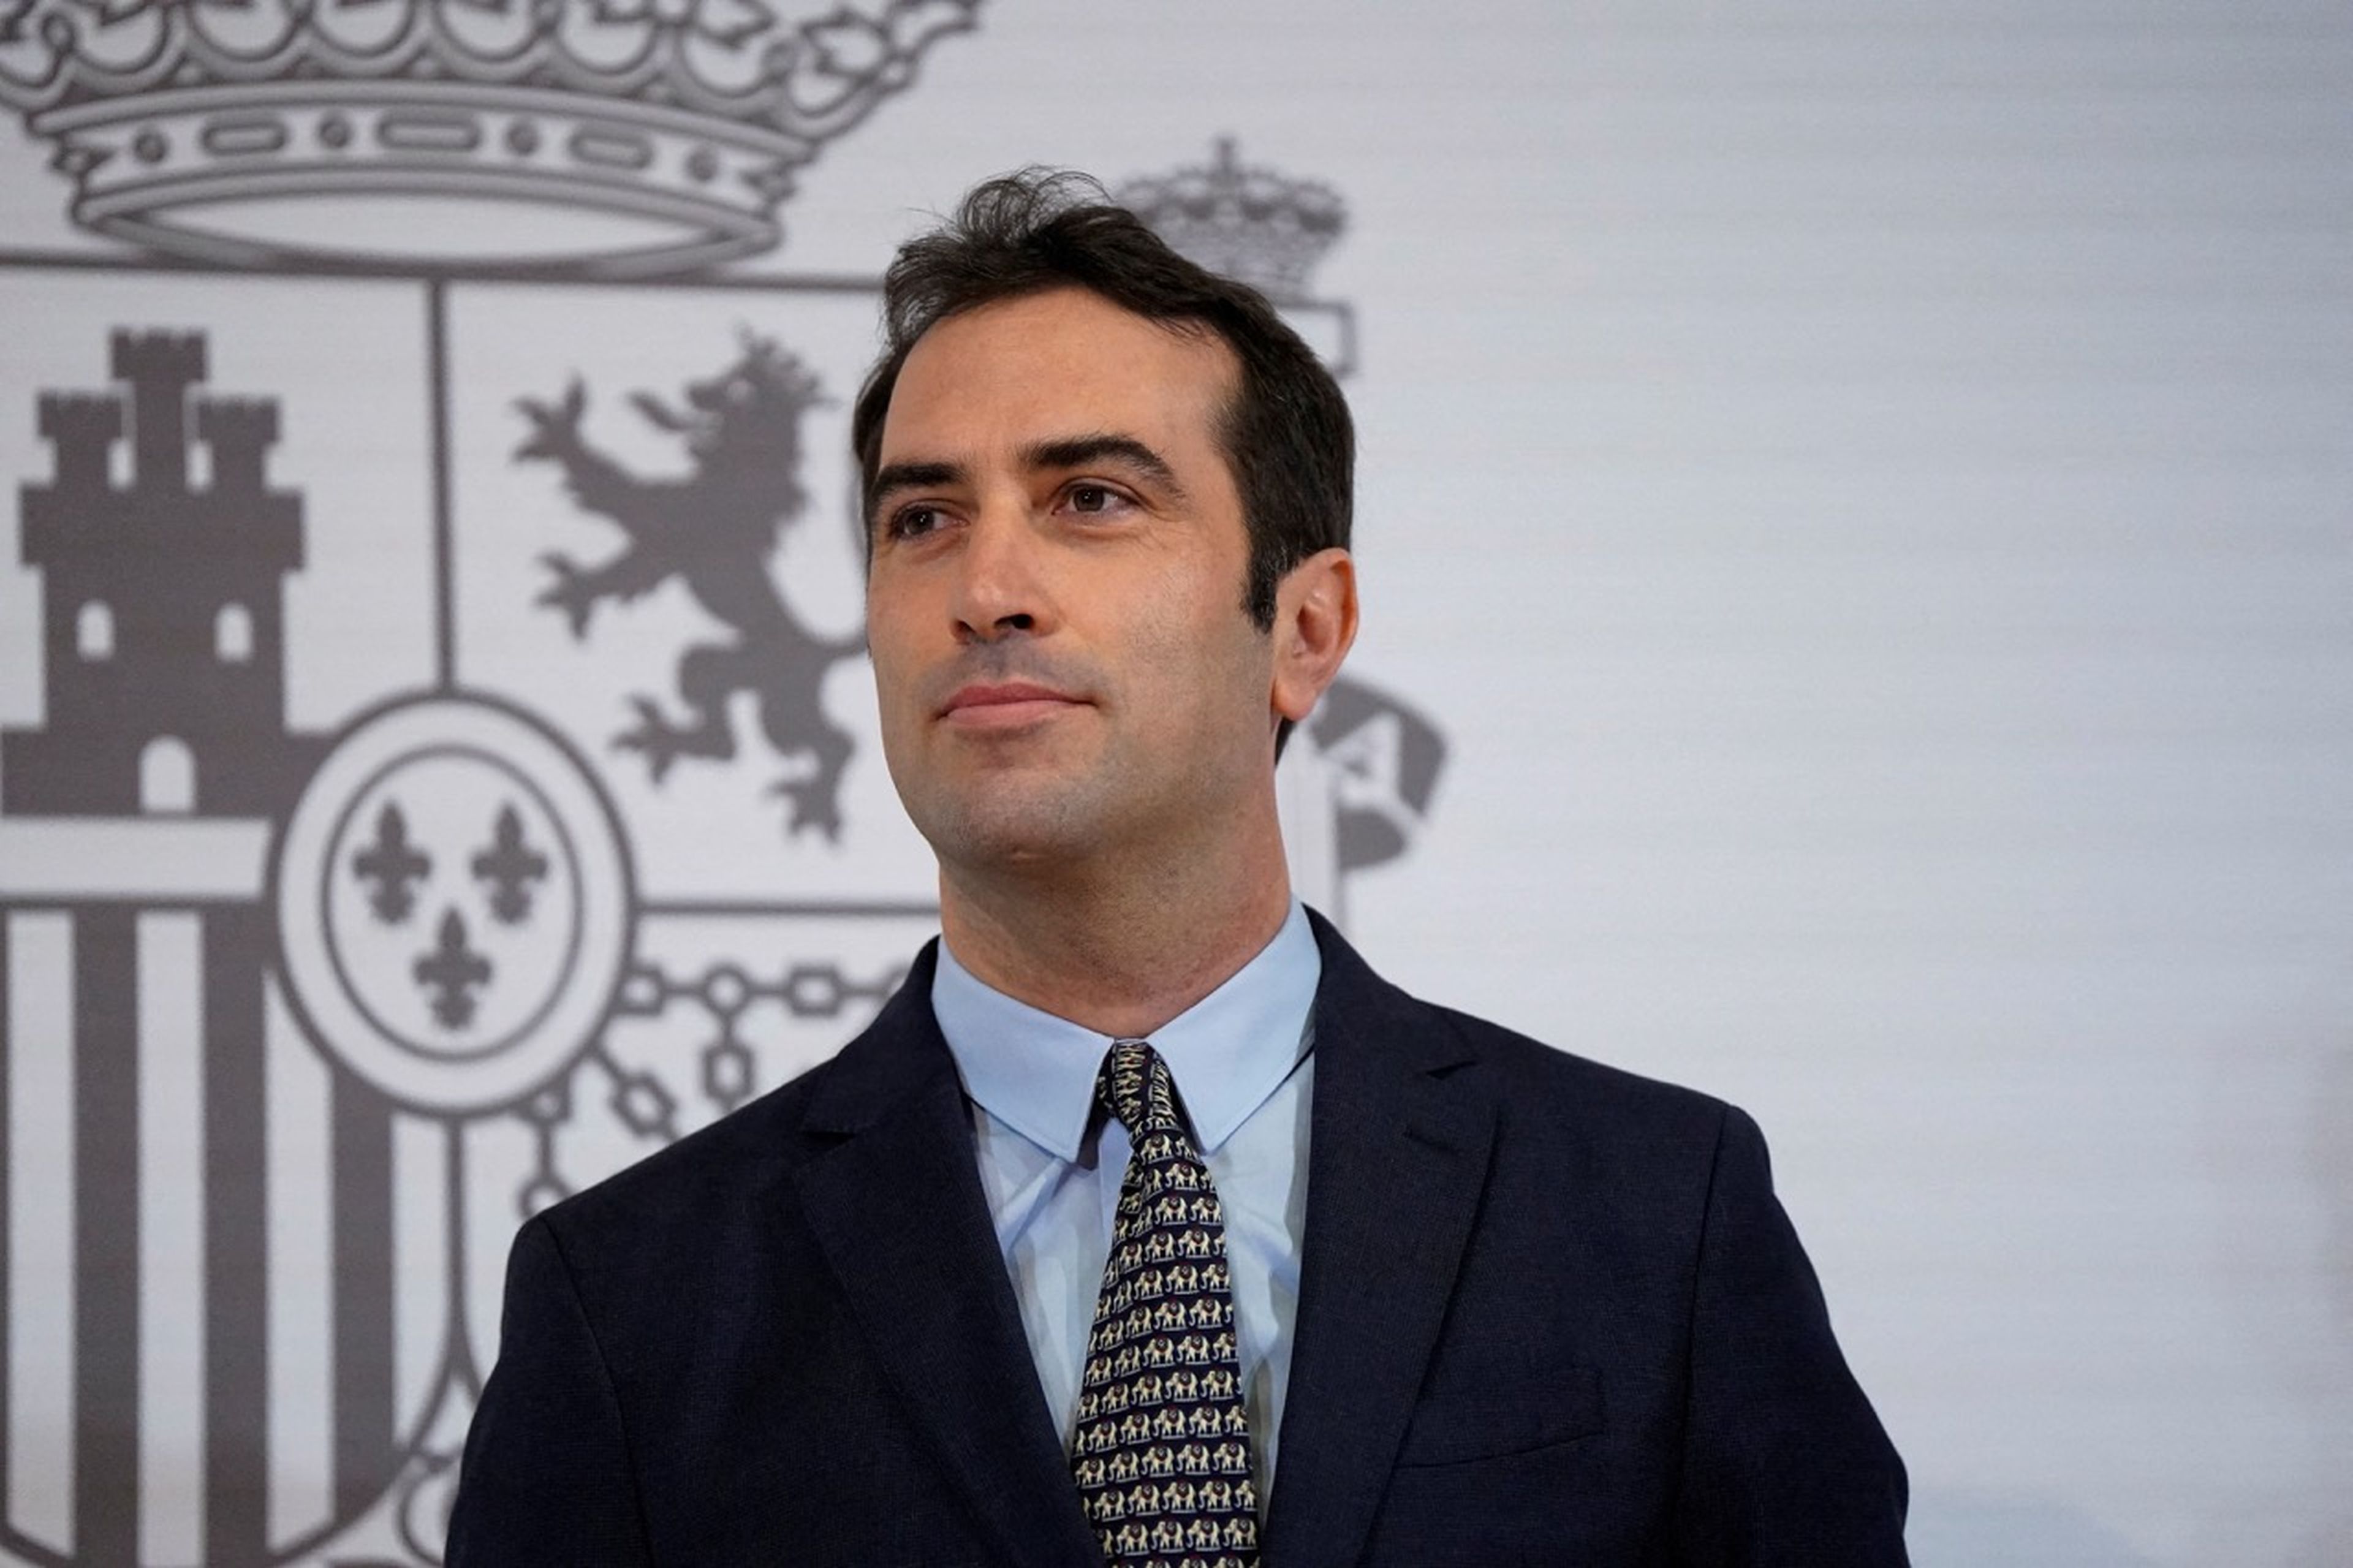 Carlos Cuerpo, ministro de Economía, Comercio y Empresa.